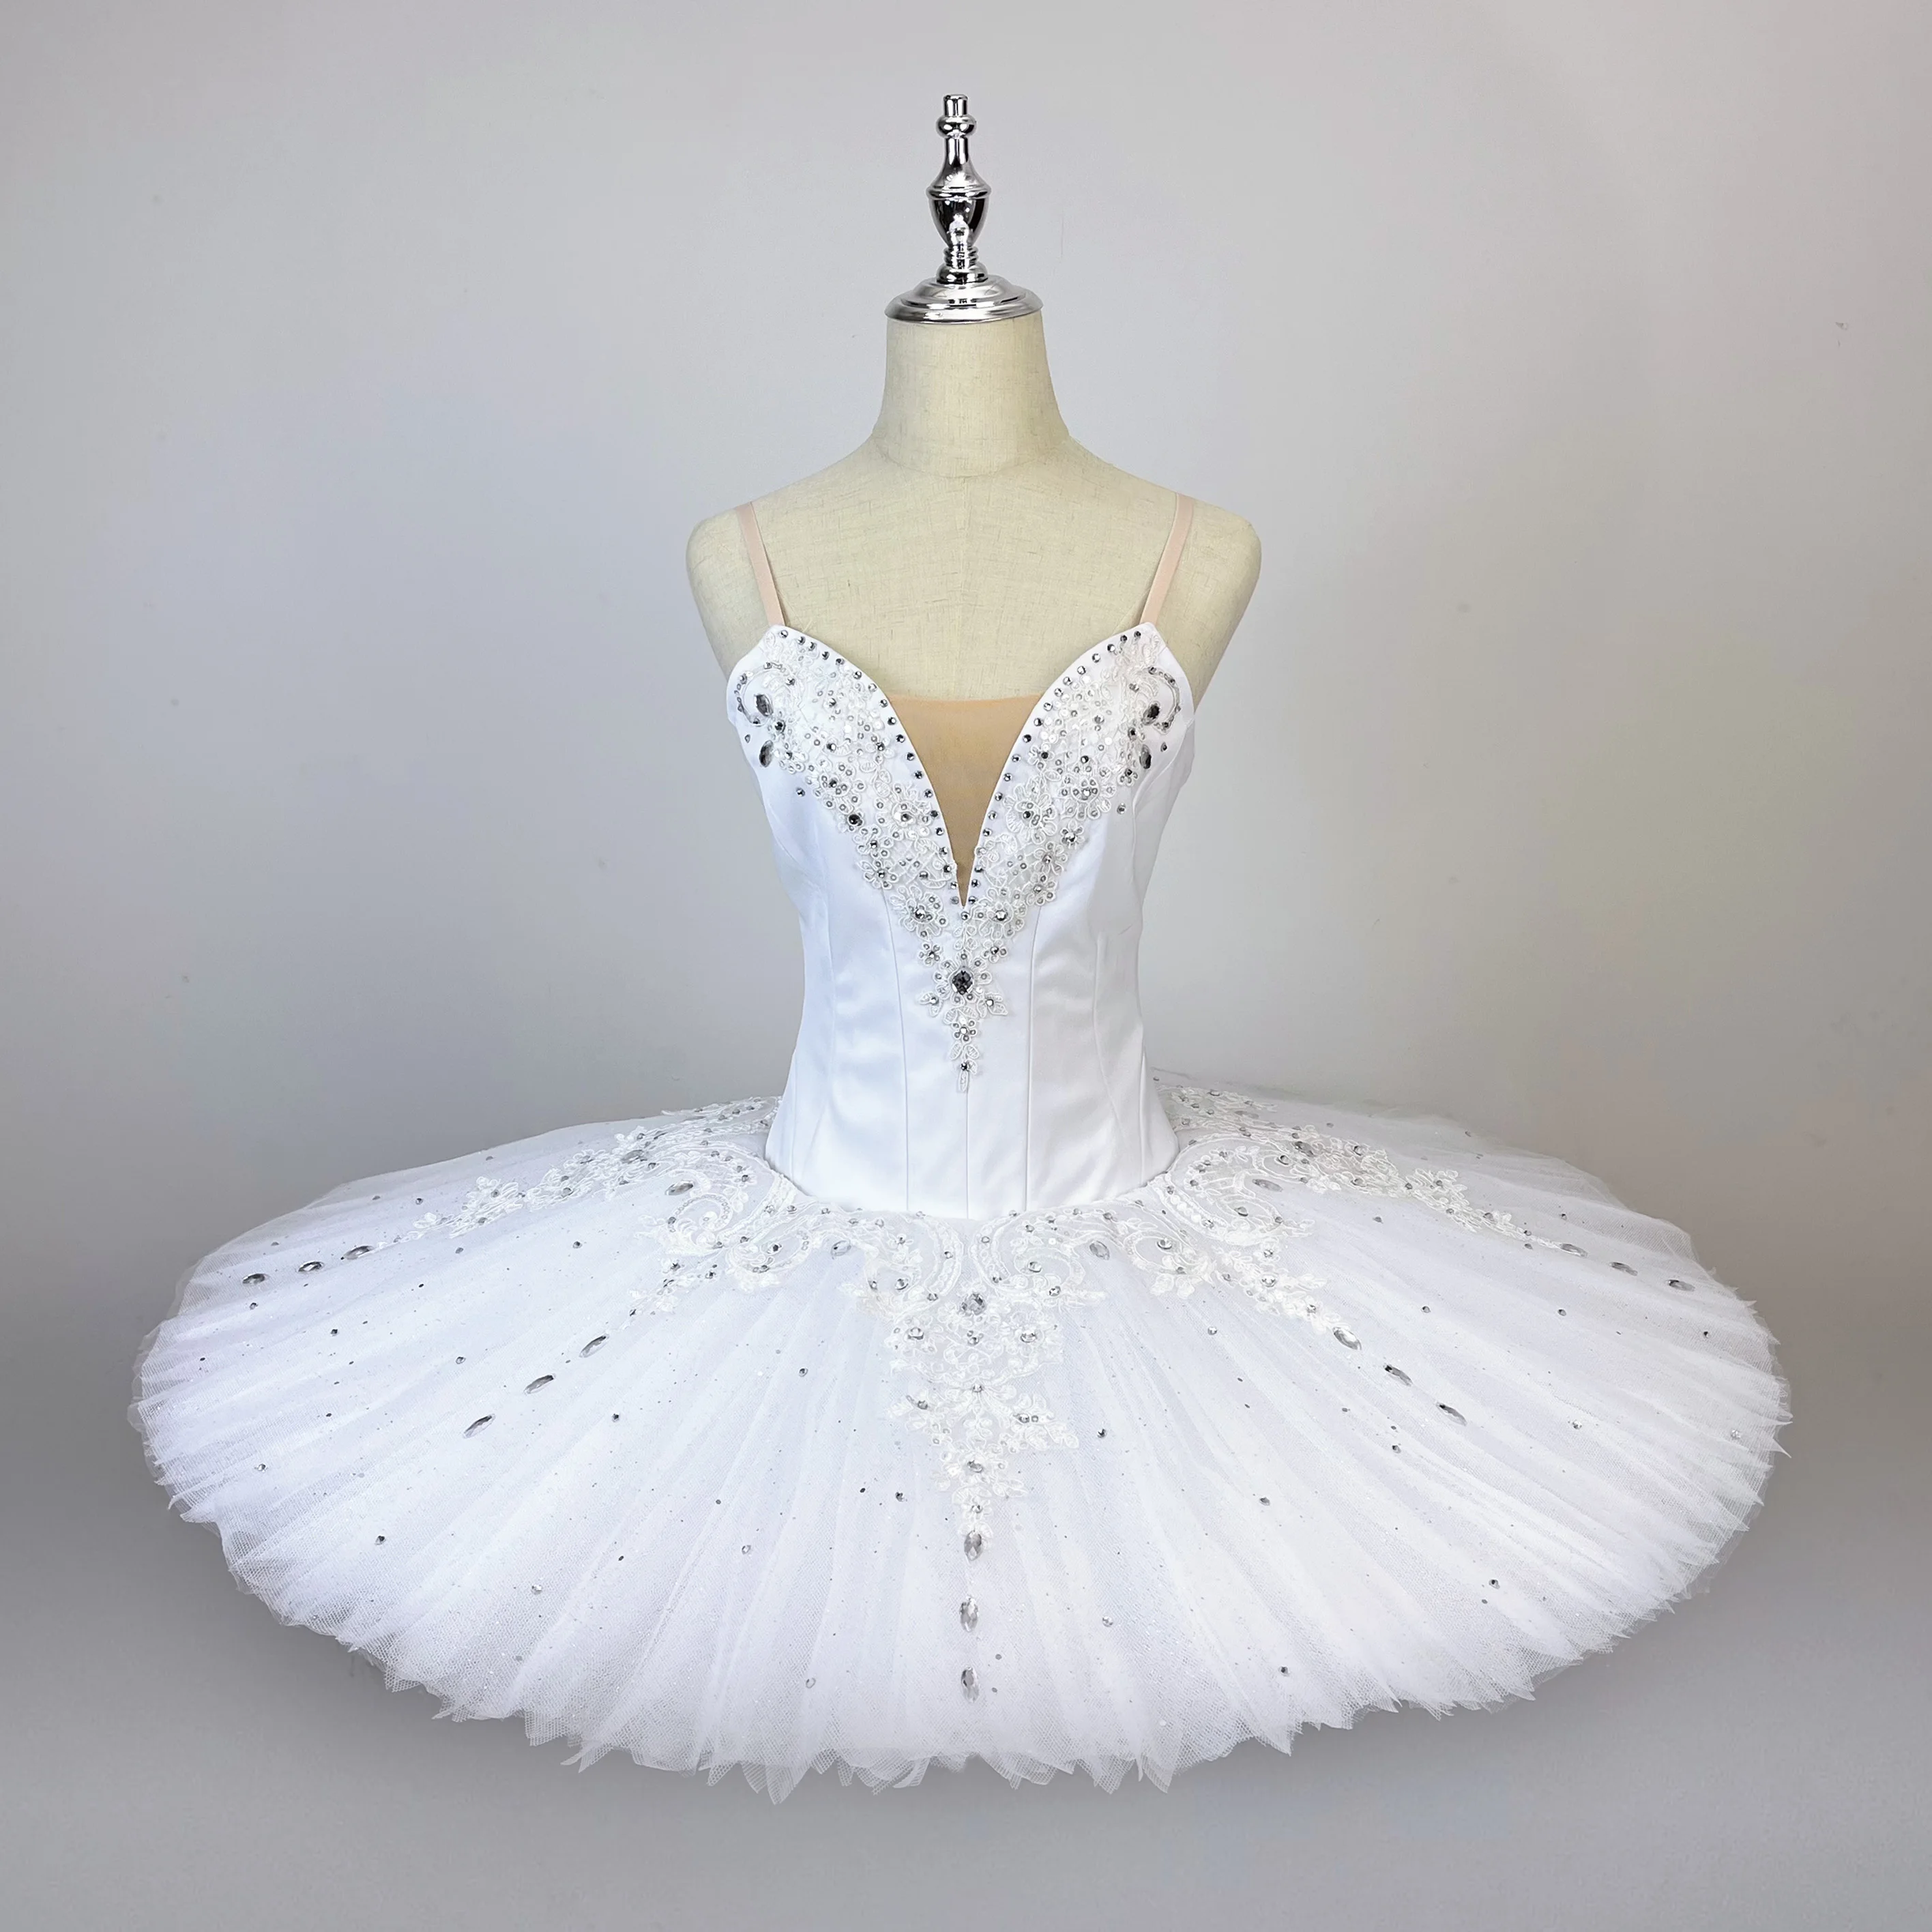 

Серебристое сказочное балетное платье, профессиональная индивидуальная детская юбка-пачка, белая танцевальная юбка для соревнований, балетная юбка для взрослых